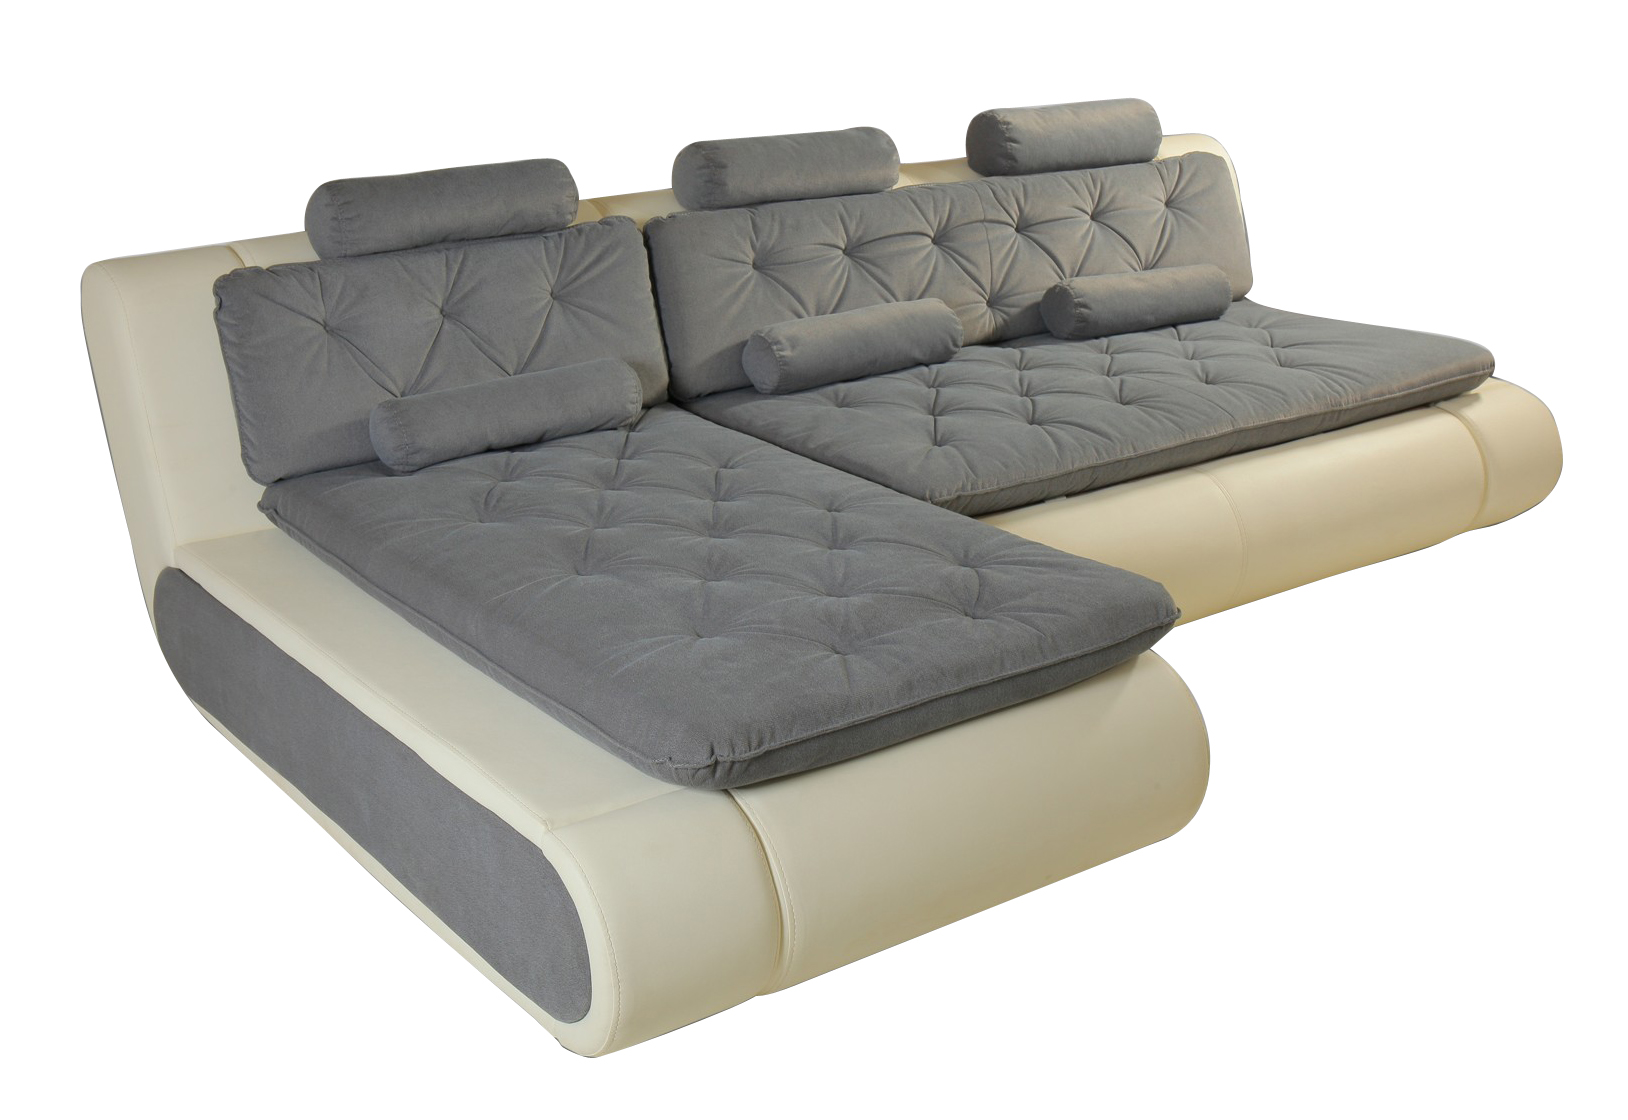 Угловой модульный диван Кормак Алмаз - купи выгодно в интернет-магазине в Москве